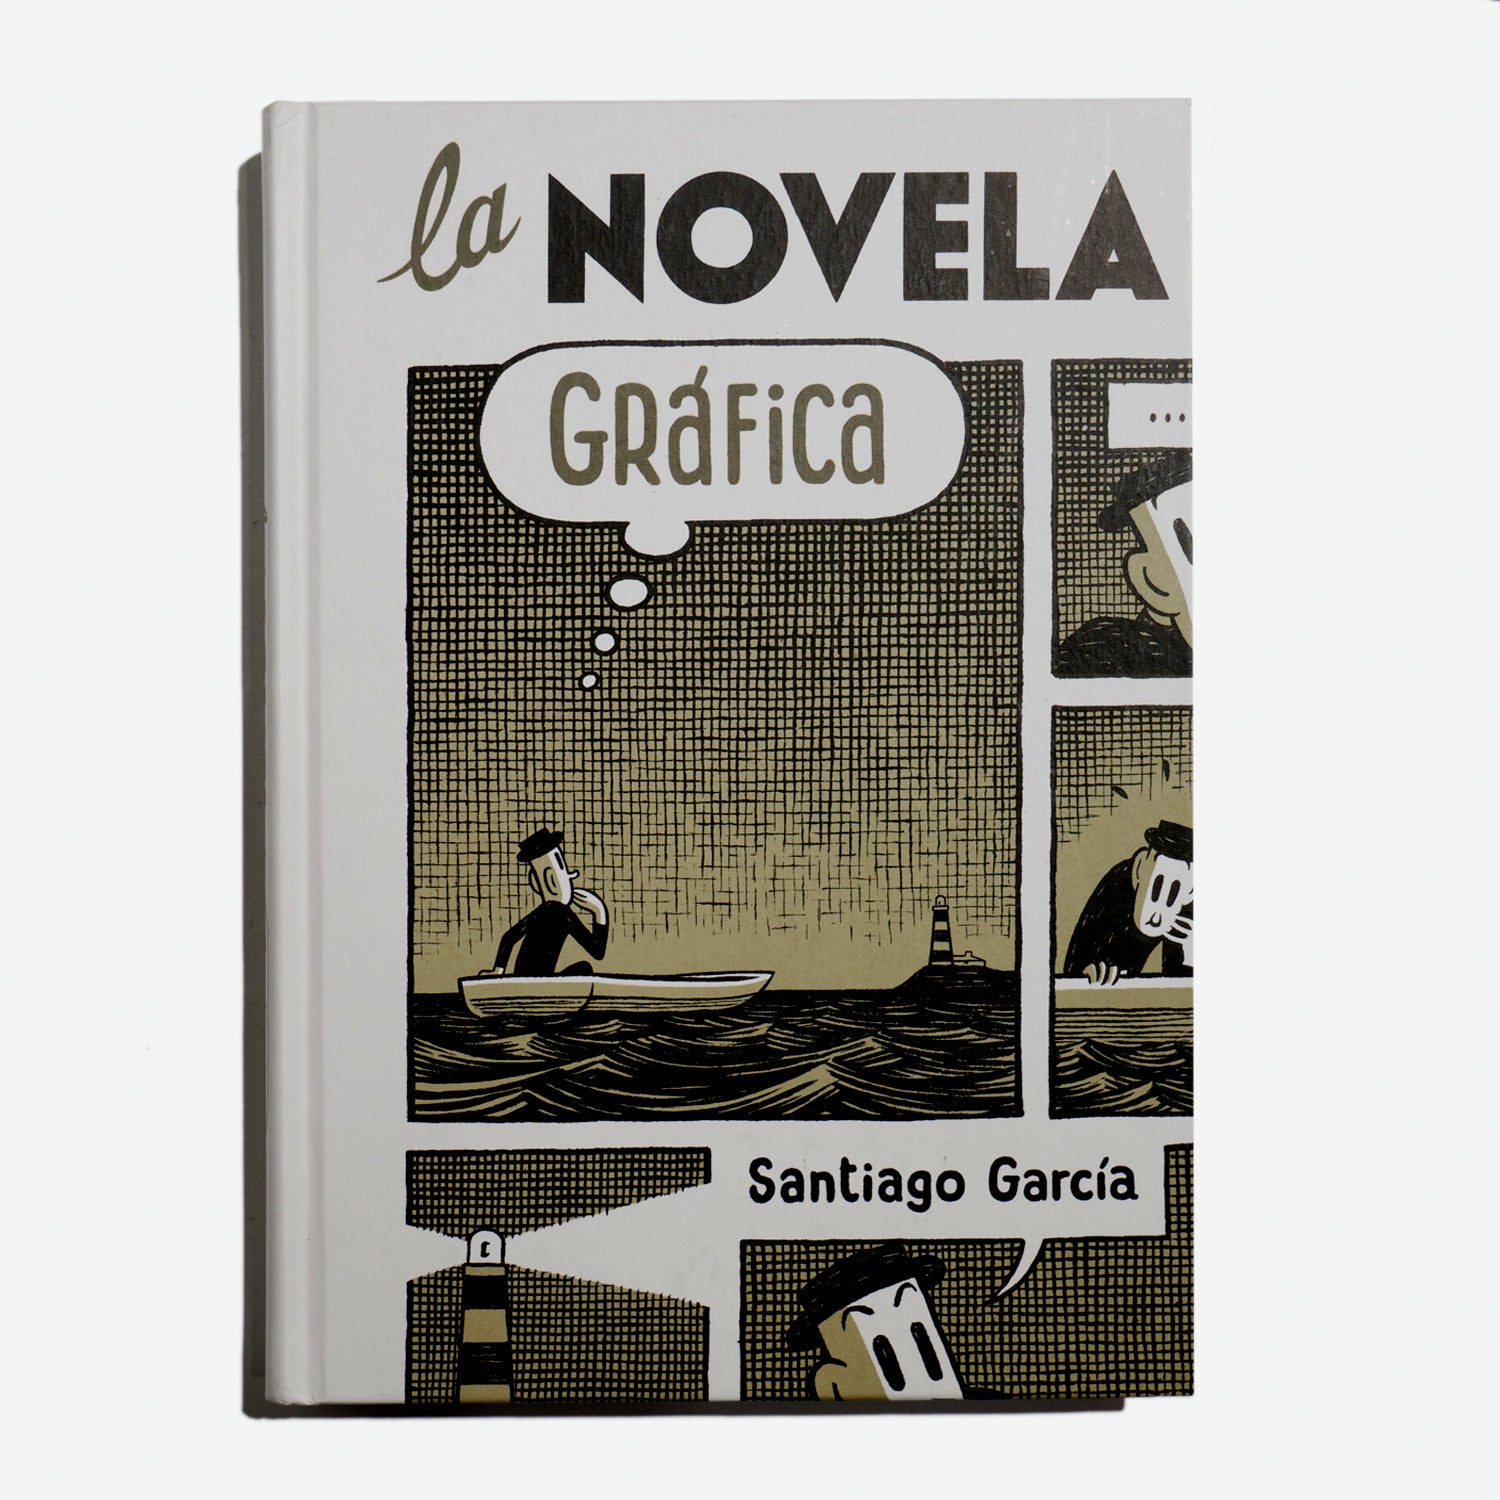 Zenda recomienda: La novela gráfica, de Santiago García - Zenda